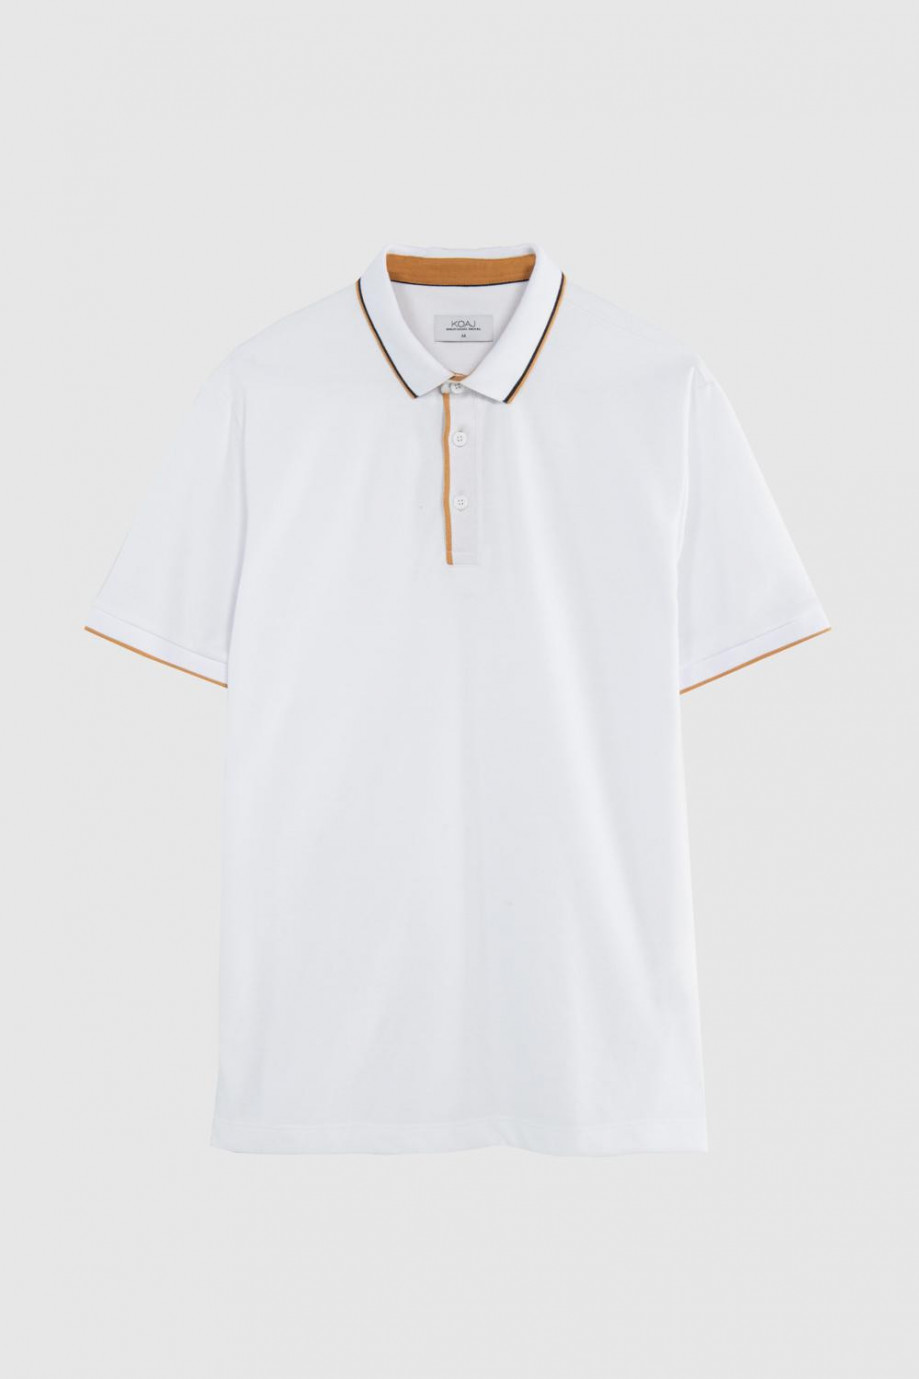 Camiseta blanca tipo polo con detalles de líneas localizados